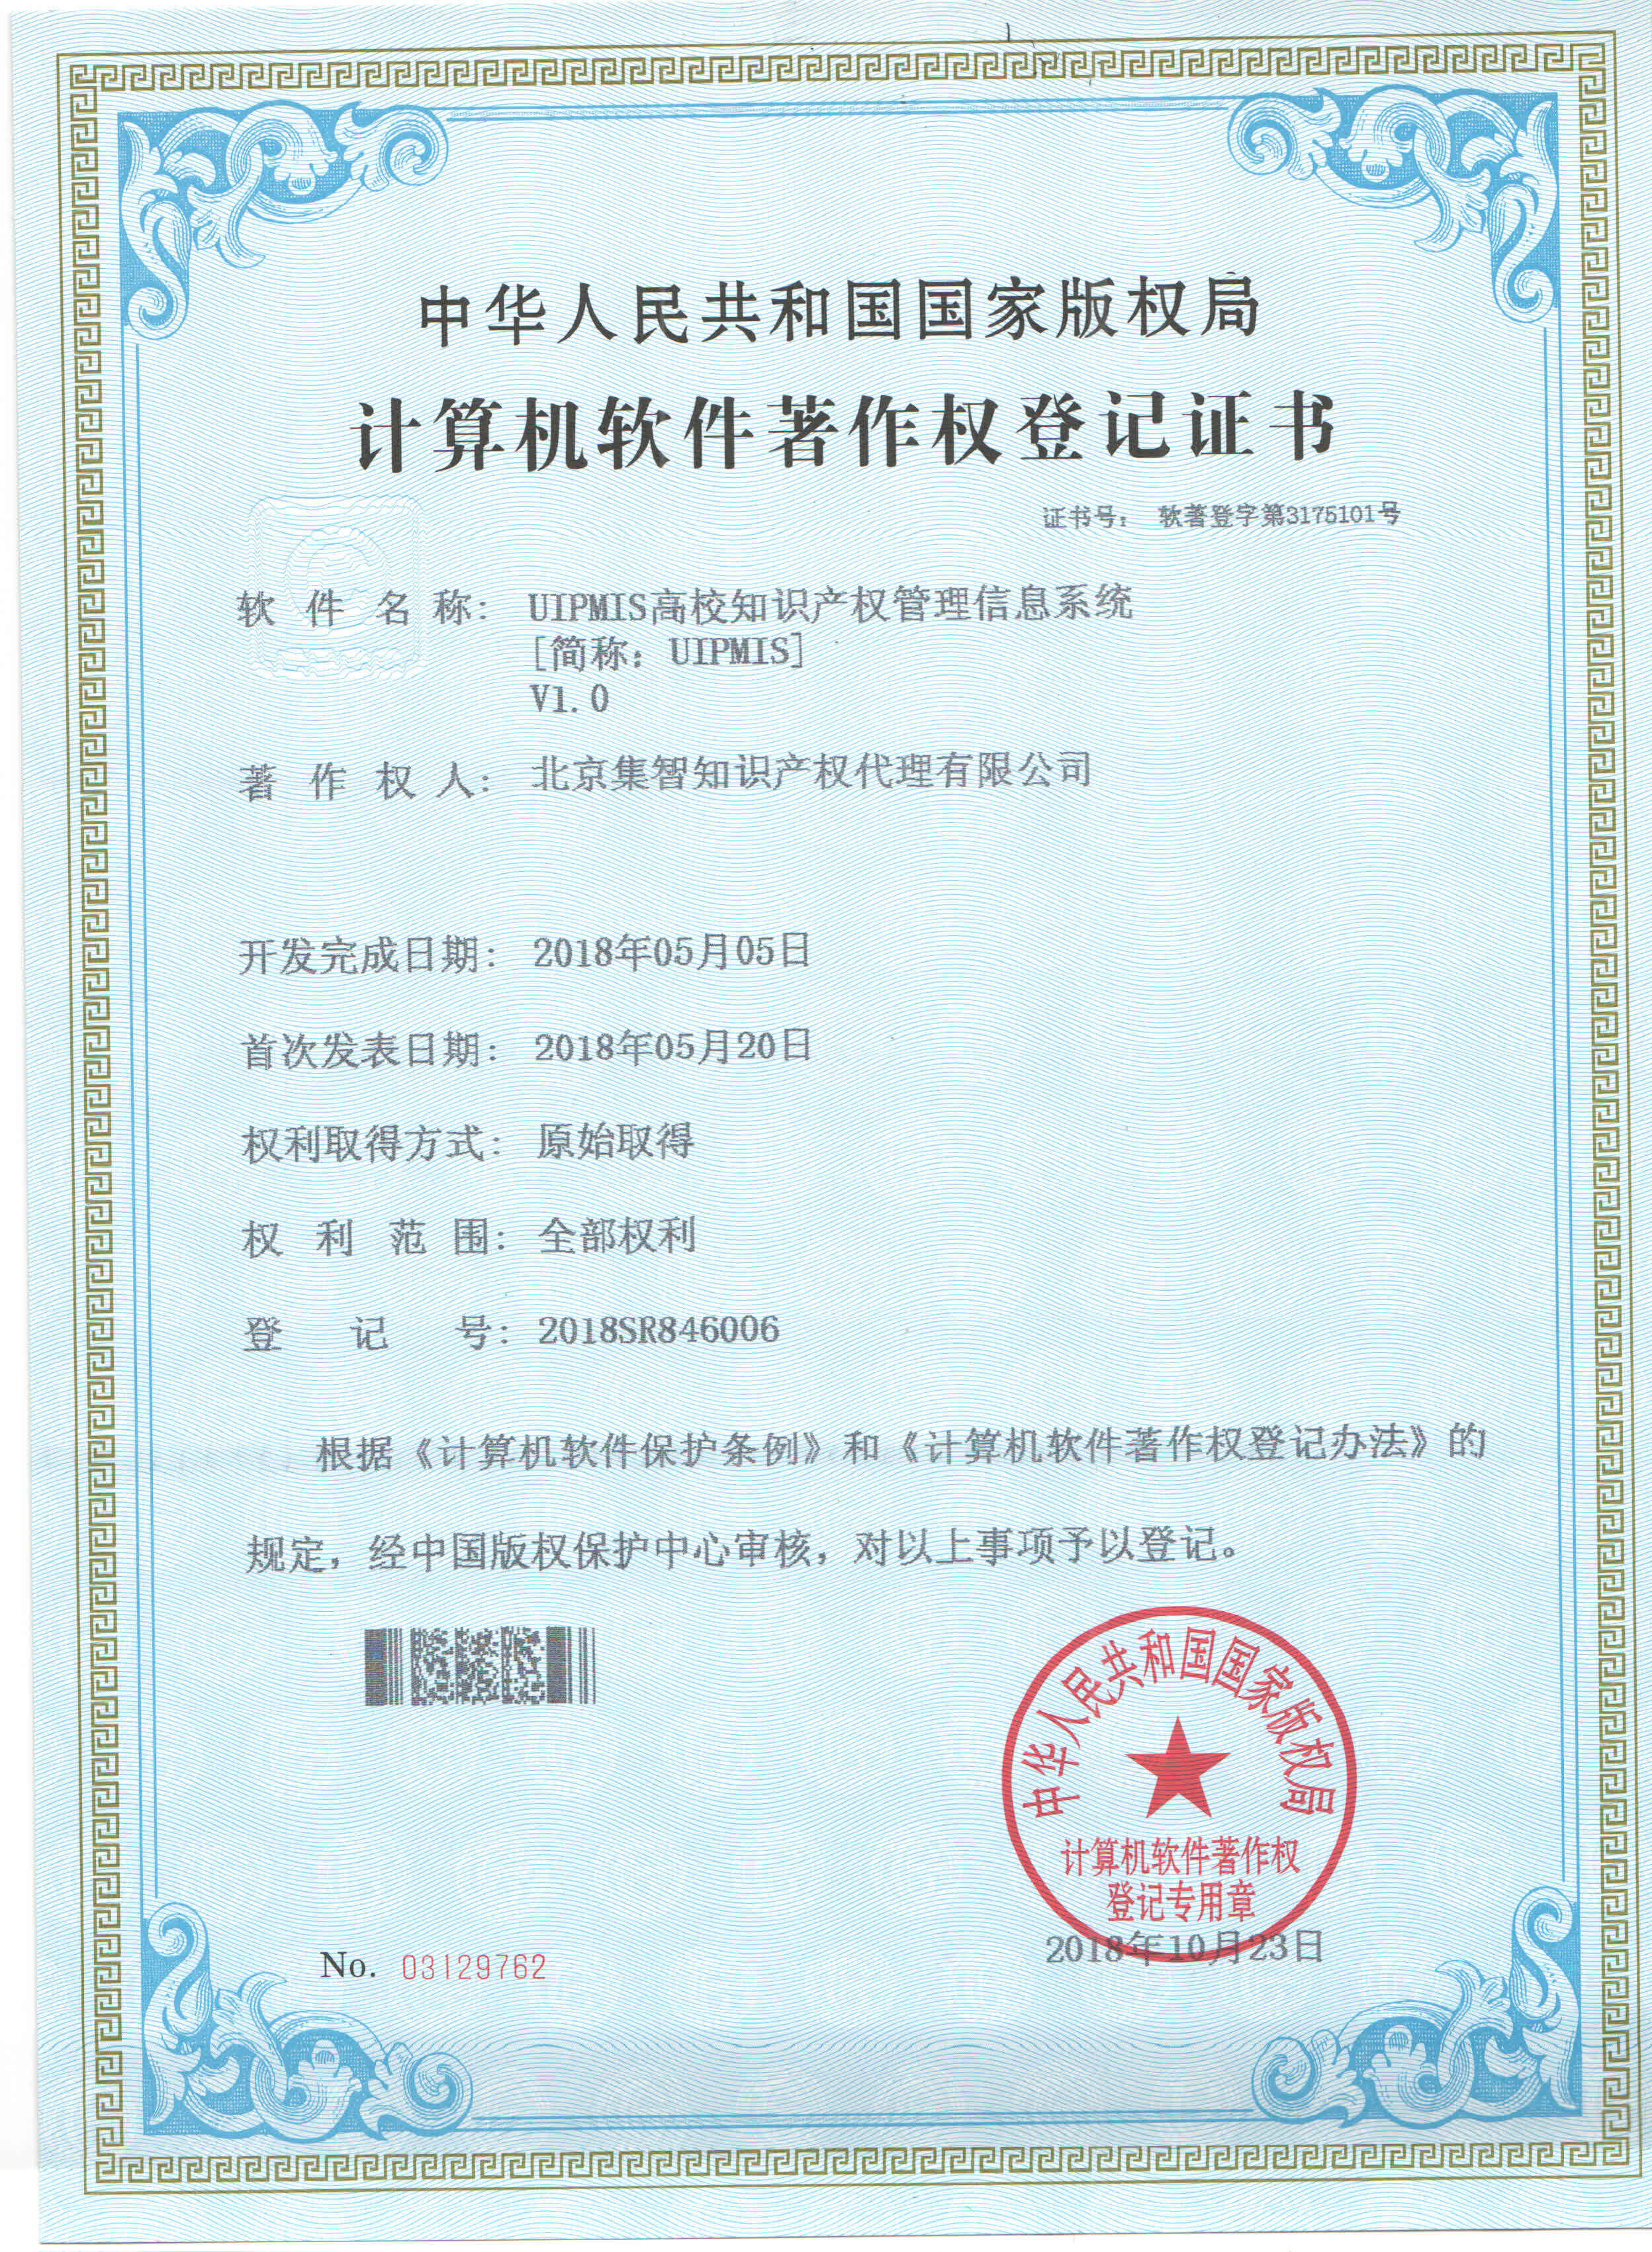 北京集智版权证书-1